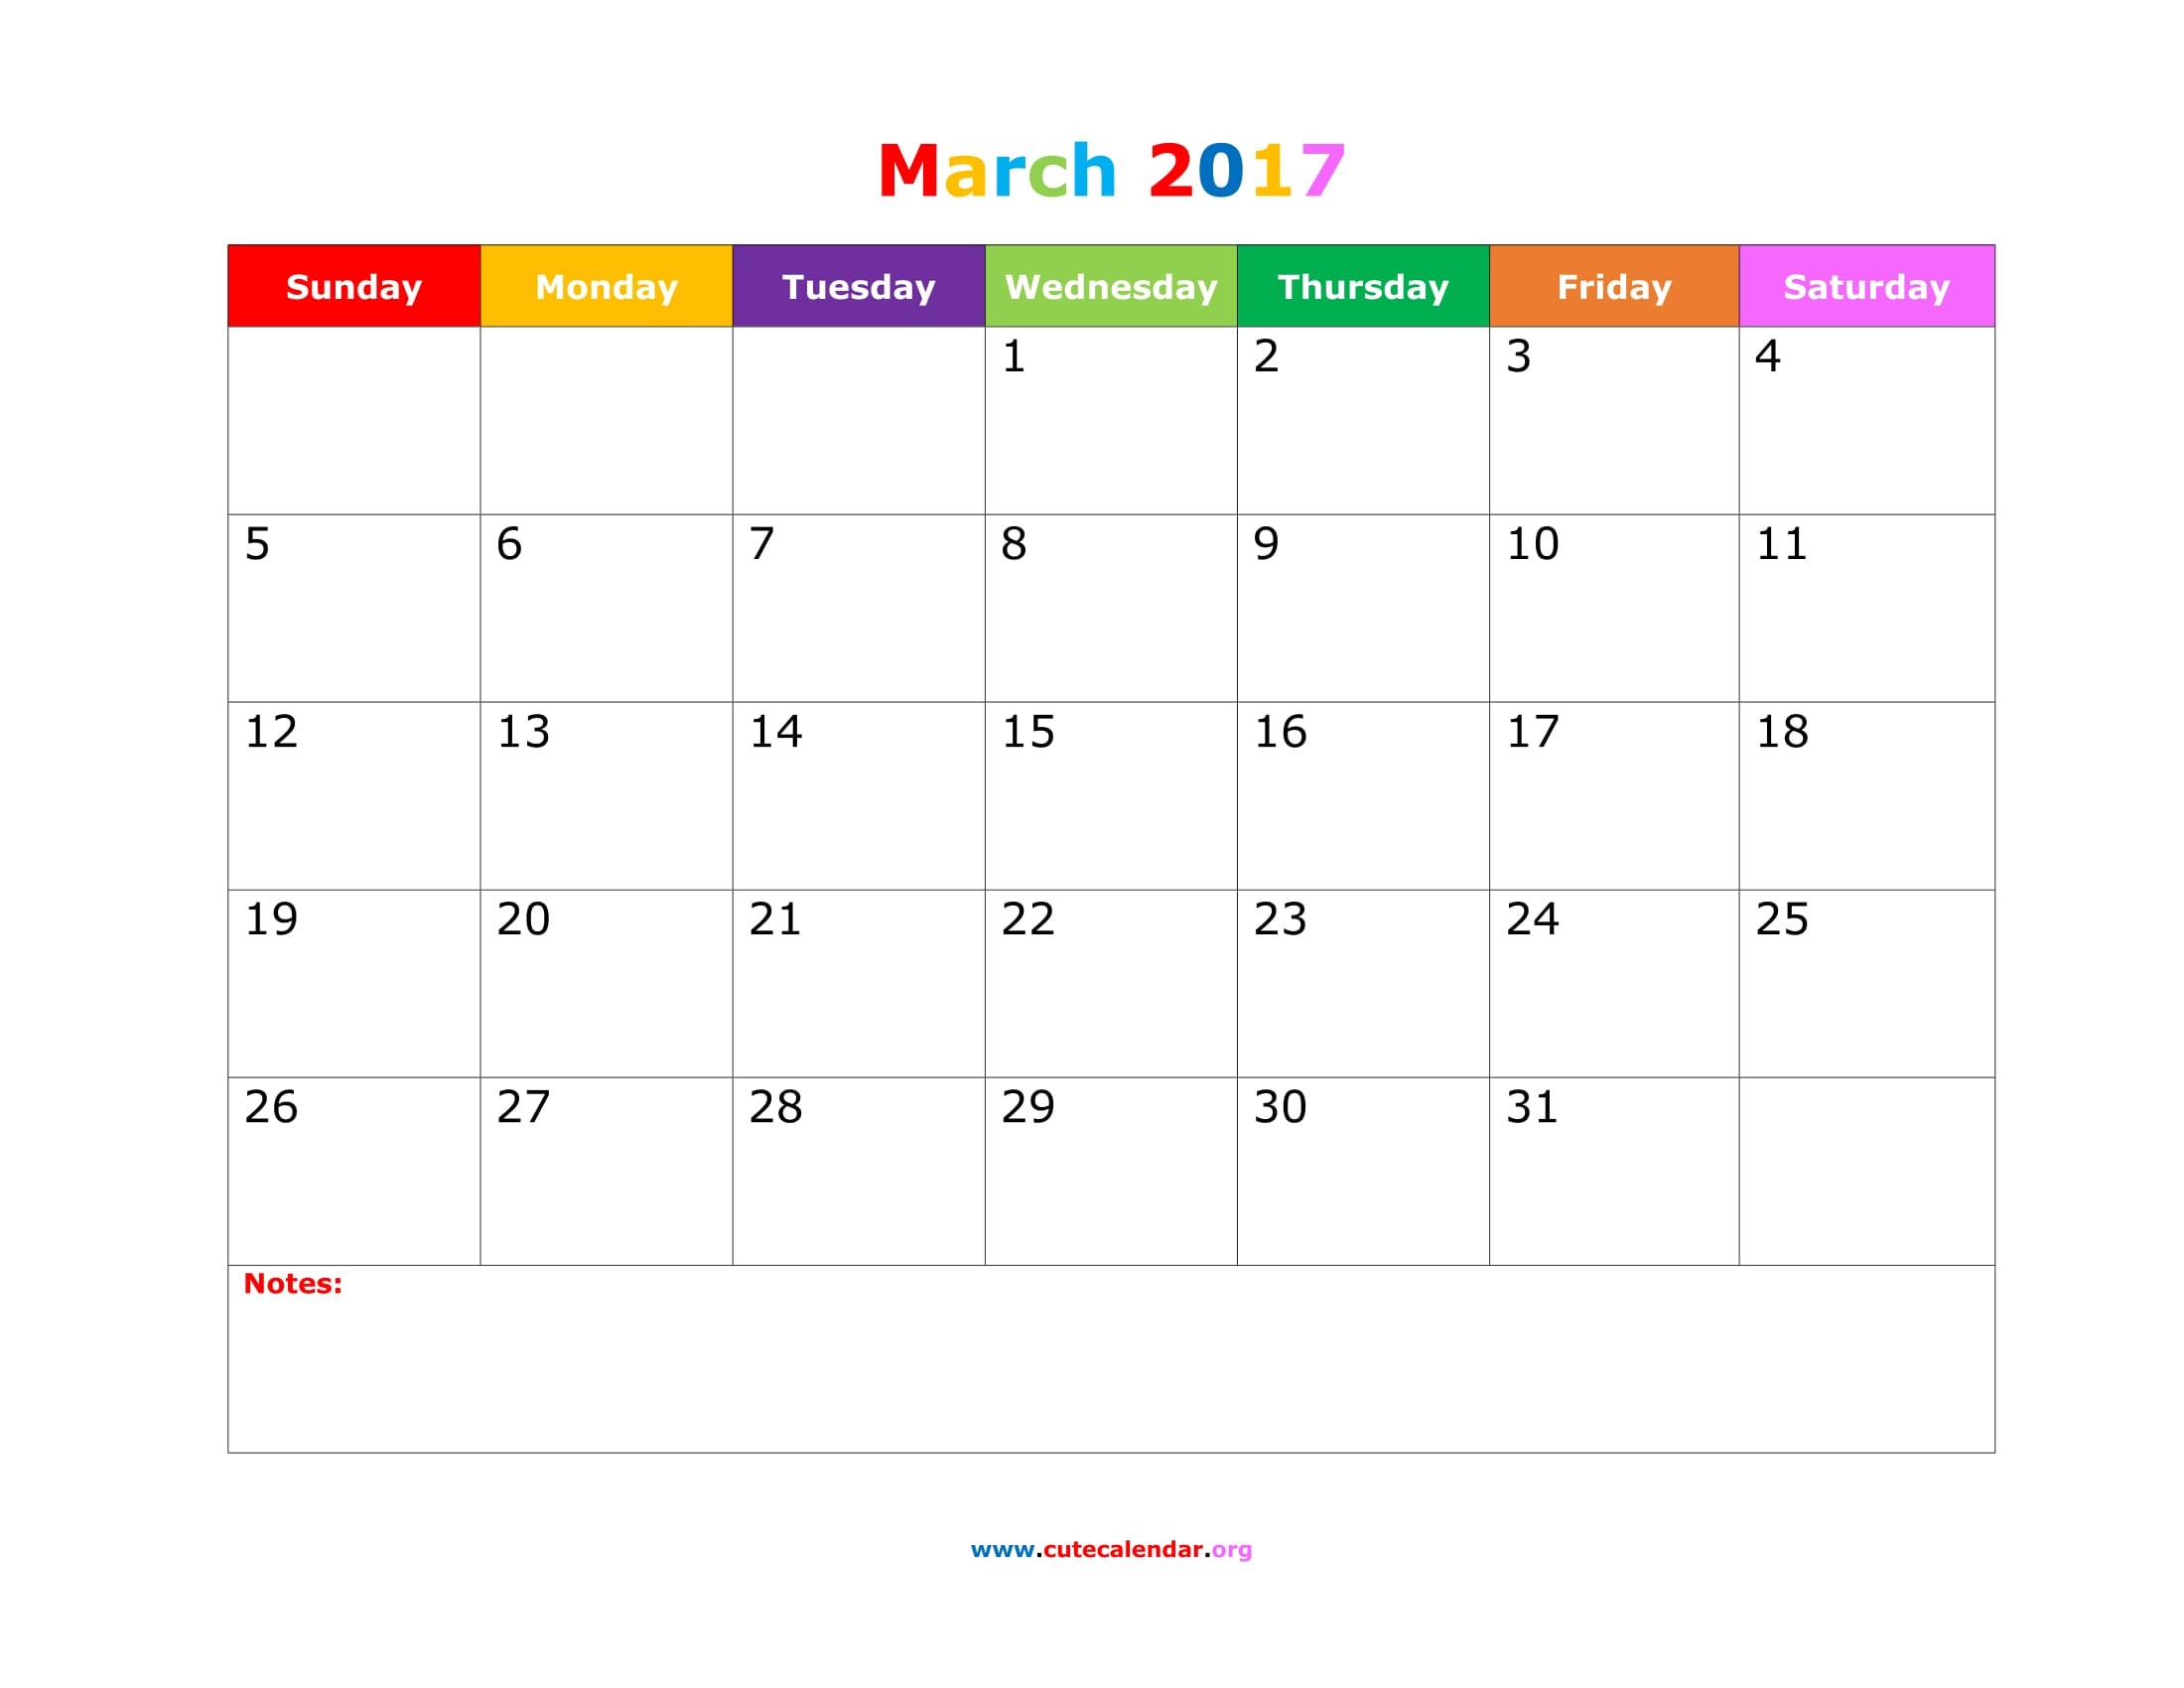 March 2018 Calendar Cute